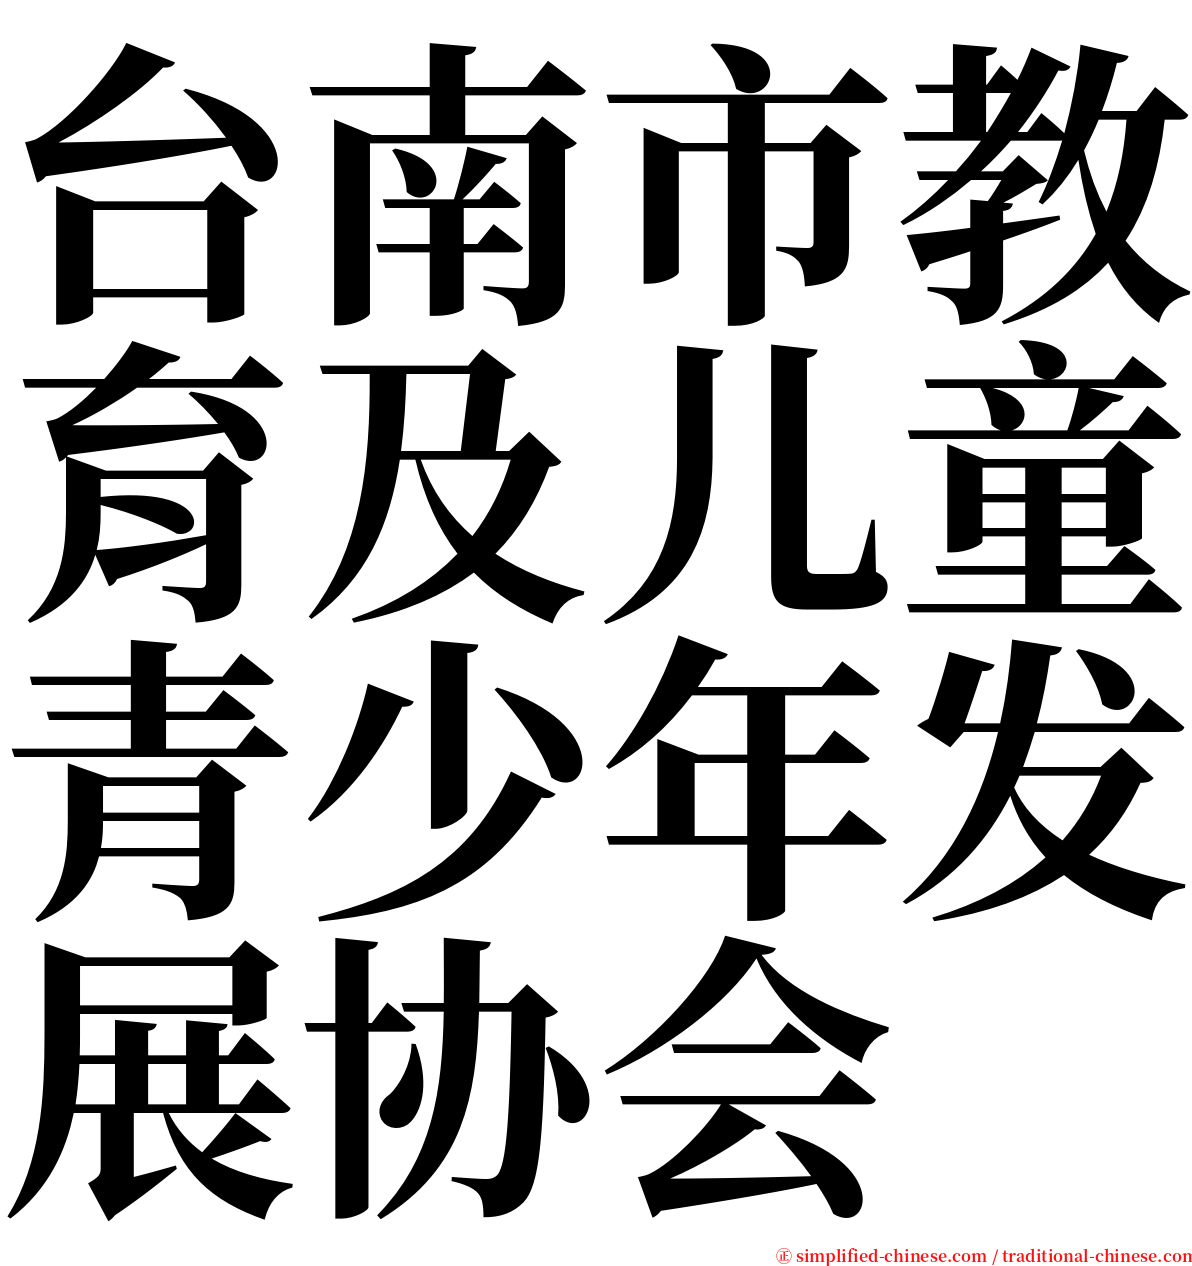 台南市教育及儿童青少年发展协会 serif font